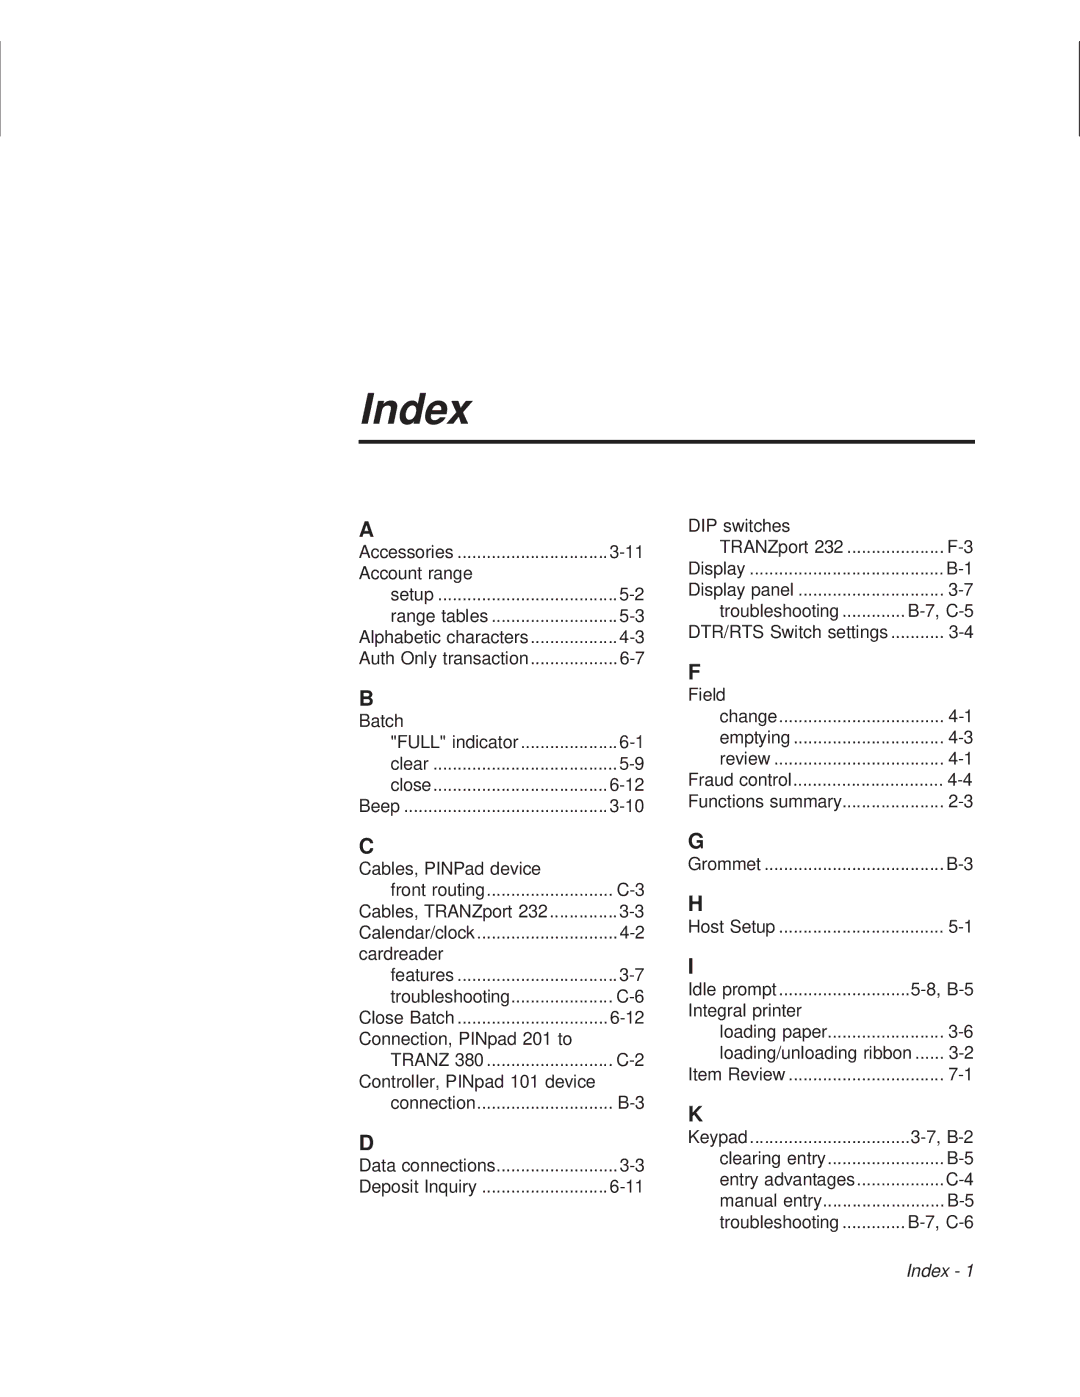 VeriFone TRANZ 460 manual Index 